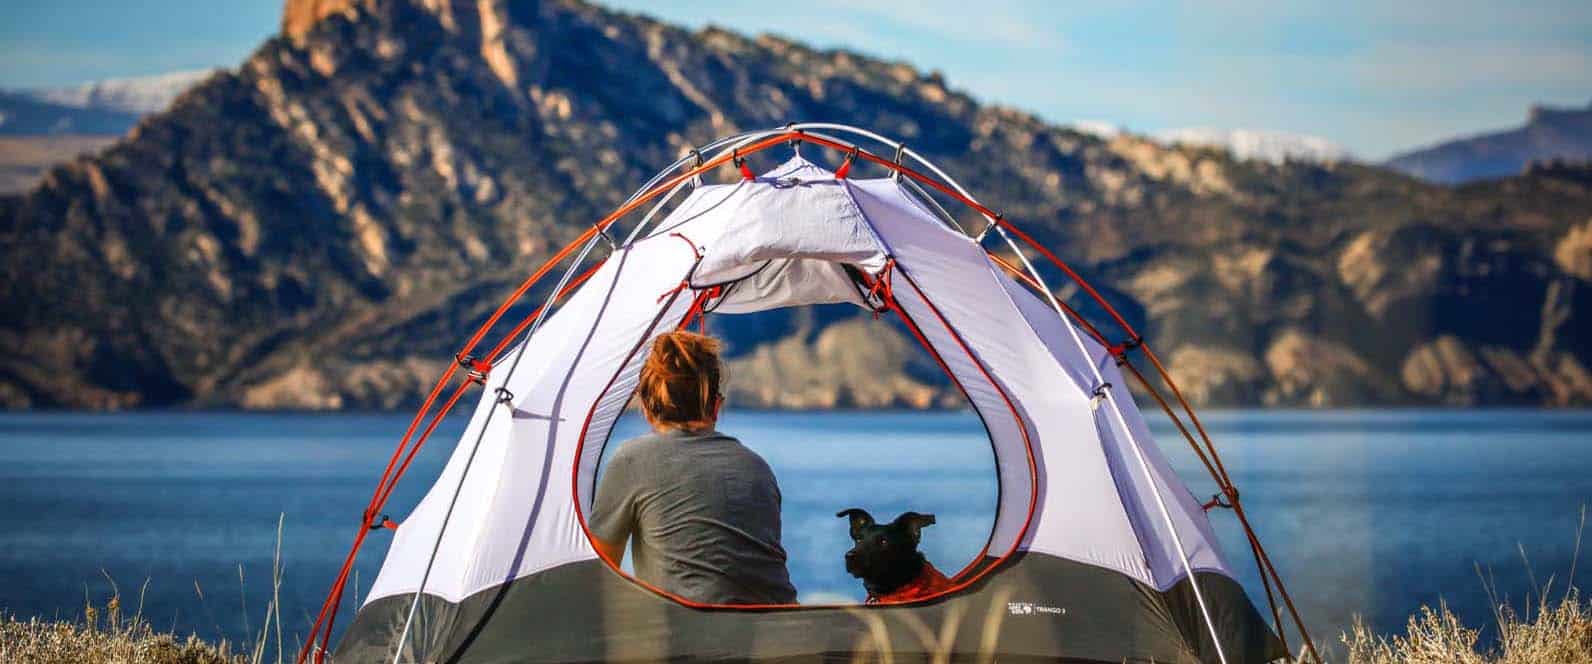 Camping mit Hunden Beitragsbild - Frau mit Hund im Zelt